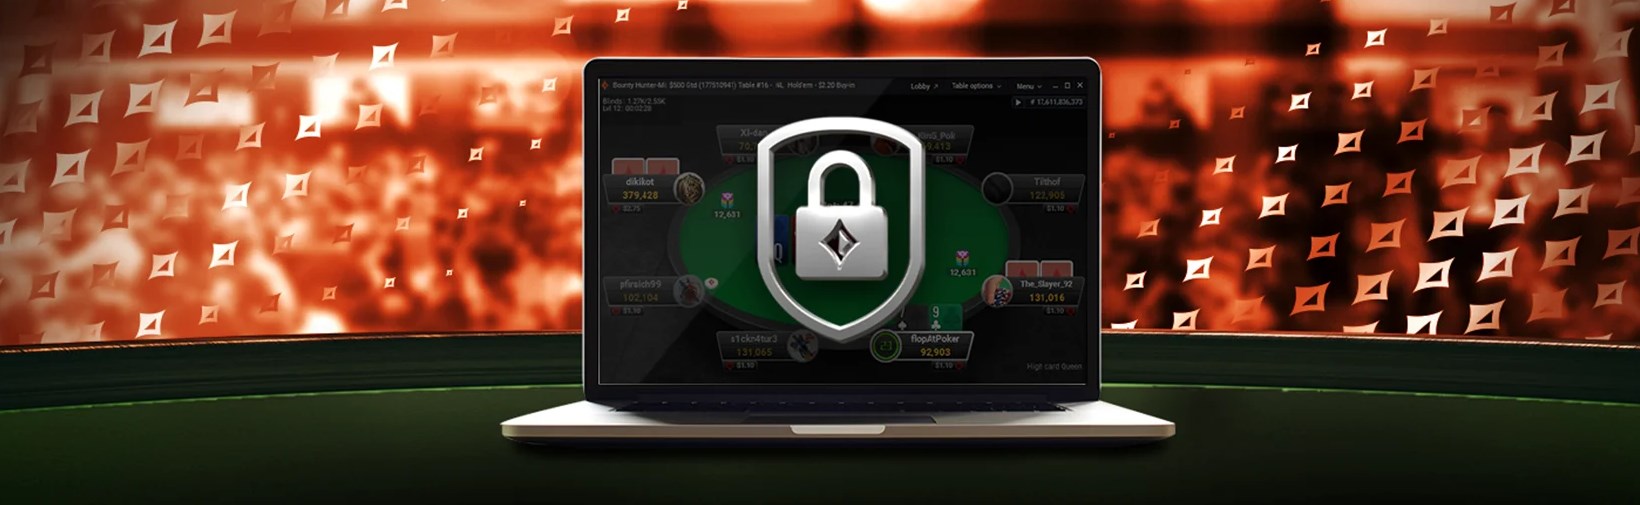 Патипокер - один из лидеров рынка онлайн-покера и стремится предоставлять максимально комфортные условия своим пользователям.